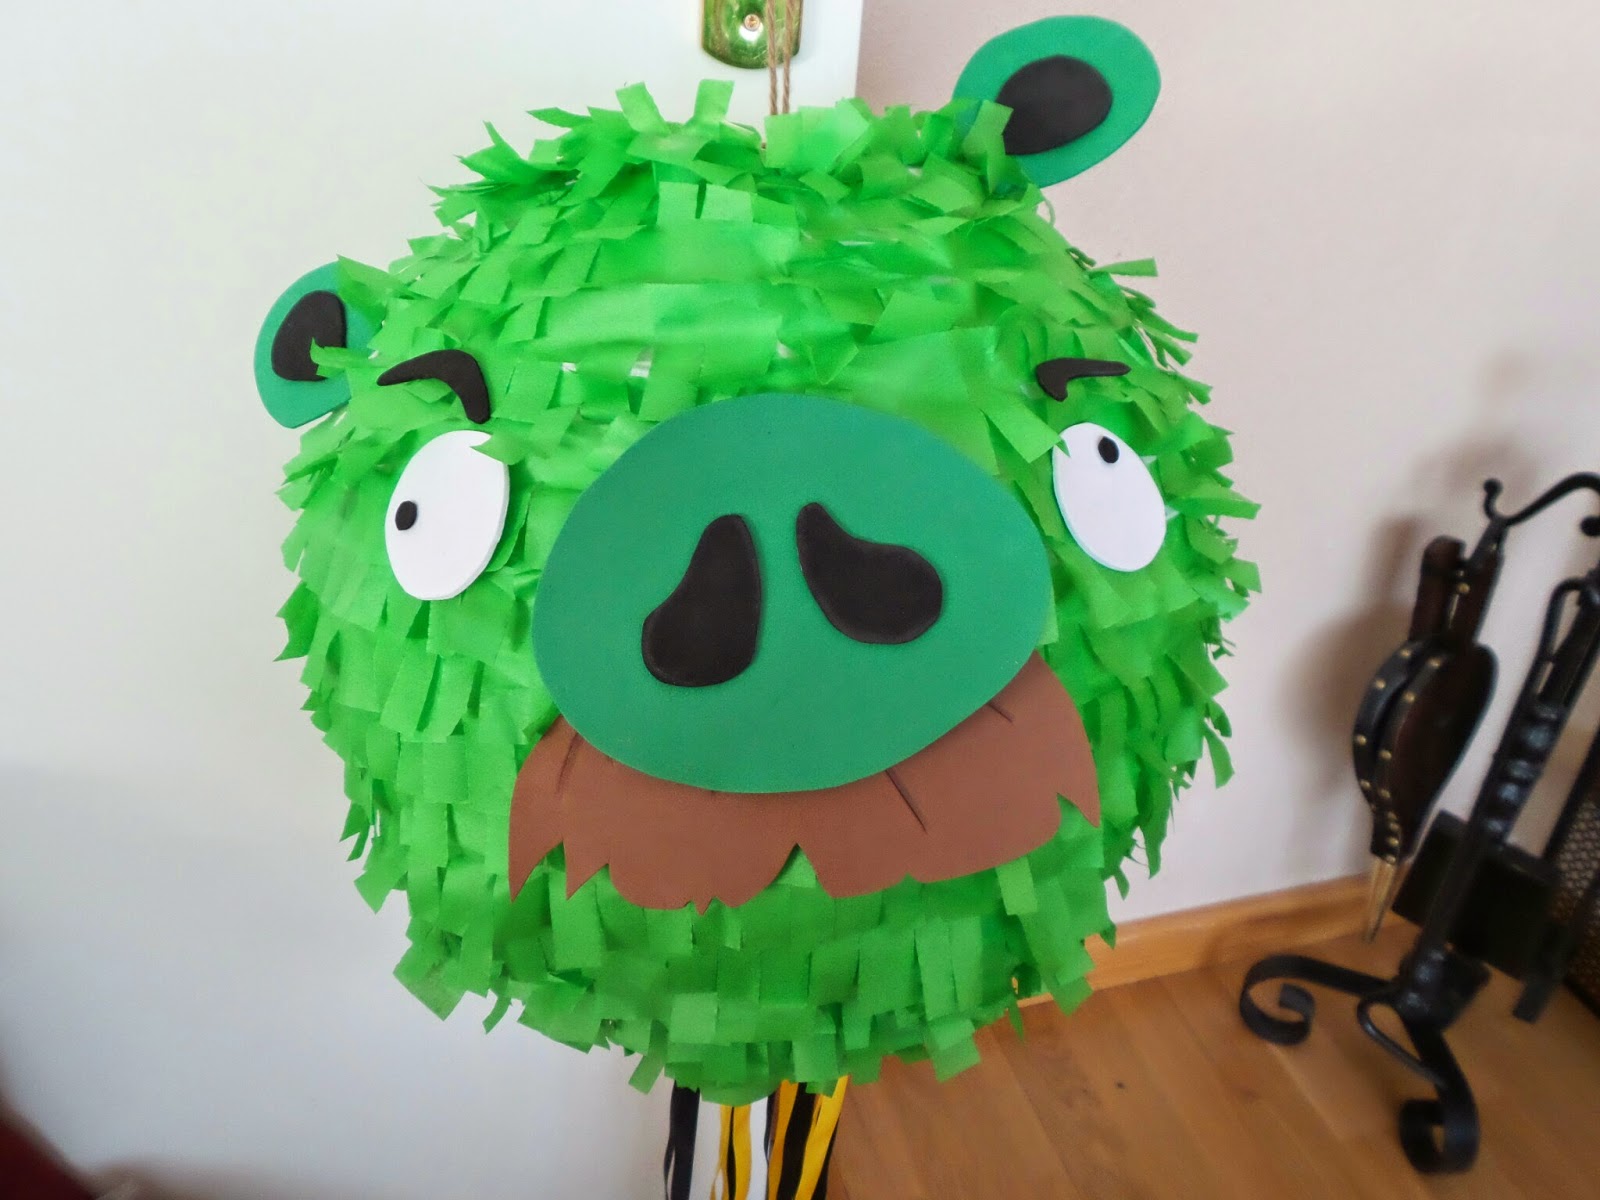 servidor cesar llegada Cosas de Katy: Piñata casera del cerdo "Bigotes" de los Angry Birds